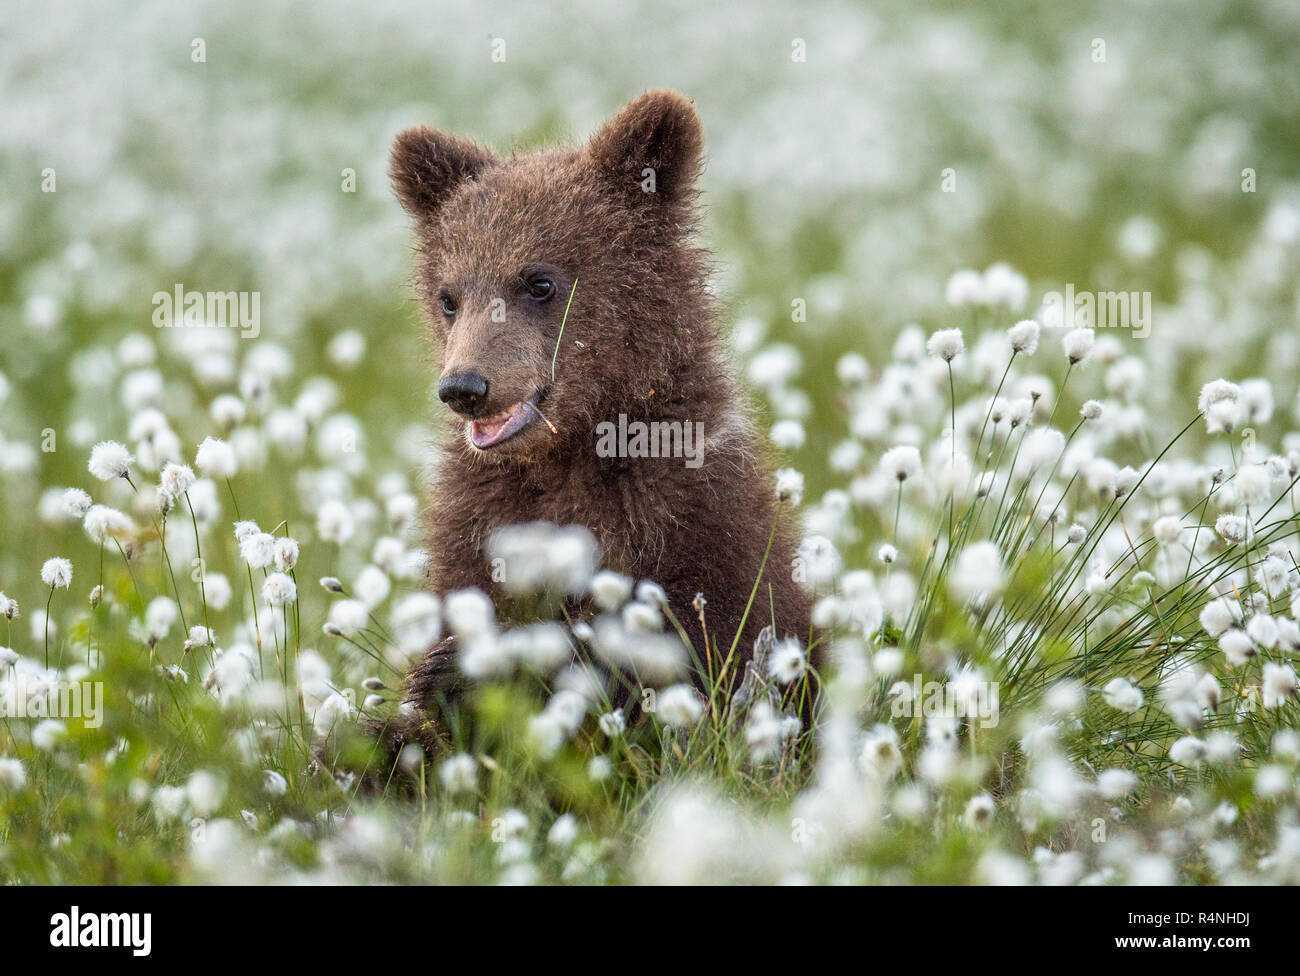 Brown bear Cub im Sommer Wald unter weißen Blumen. Wissenschaftlicher Name: Ursus arctos. Natürlichen grünen Hintergrund. Natürlicher Lebensraum. Stockfoto